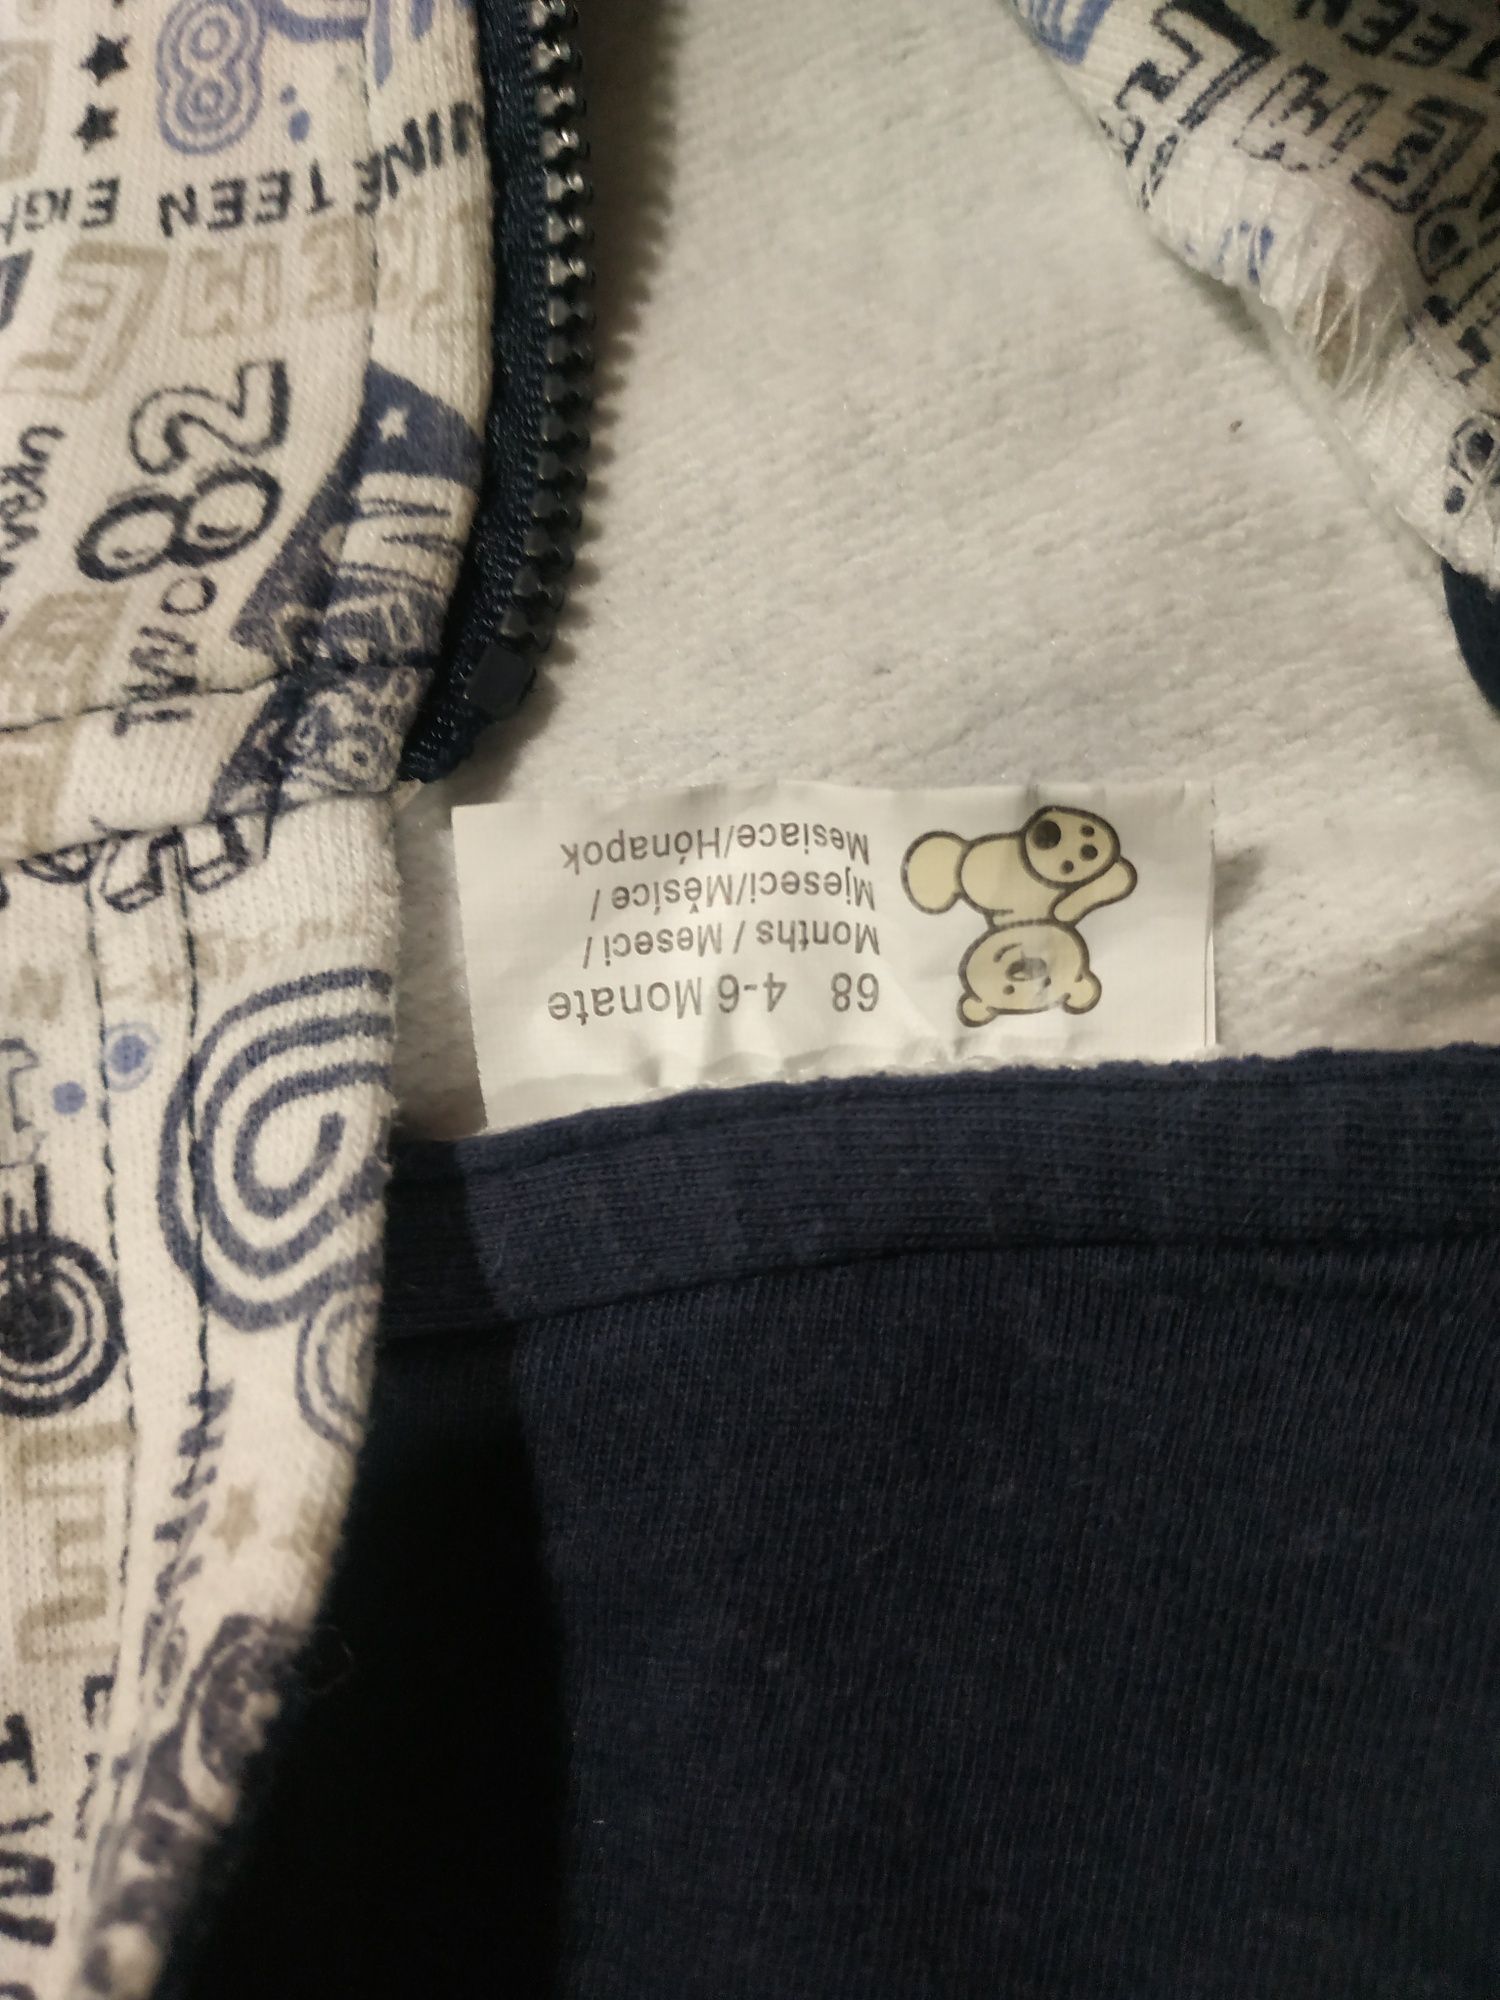 Bluza chłopięca rozsuwana, rozmiar 68